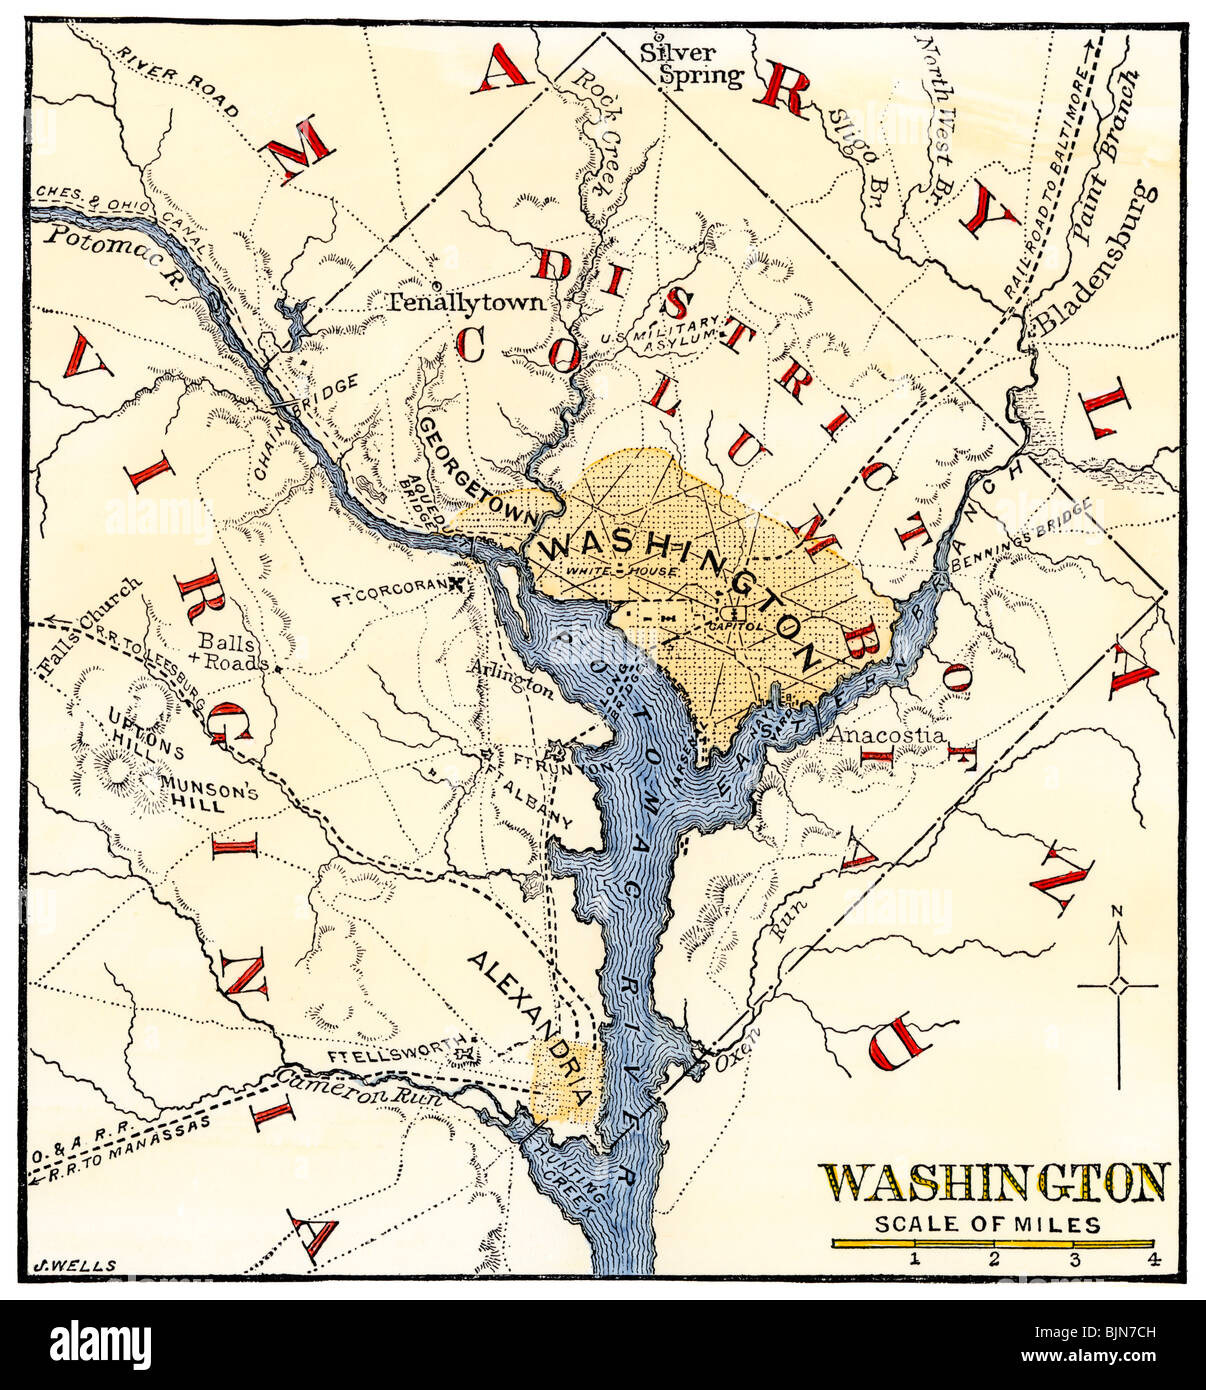 Mappa di Washington DC e dintorni sin dall'inizio della guerra civile. Colorate a mano la xilografia Foto Stock